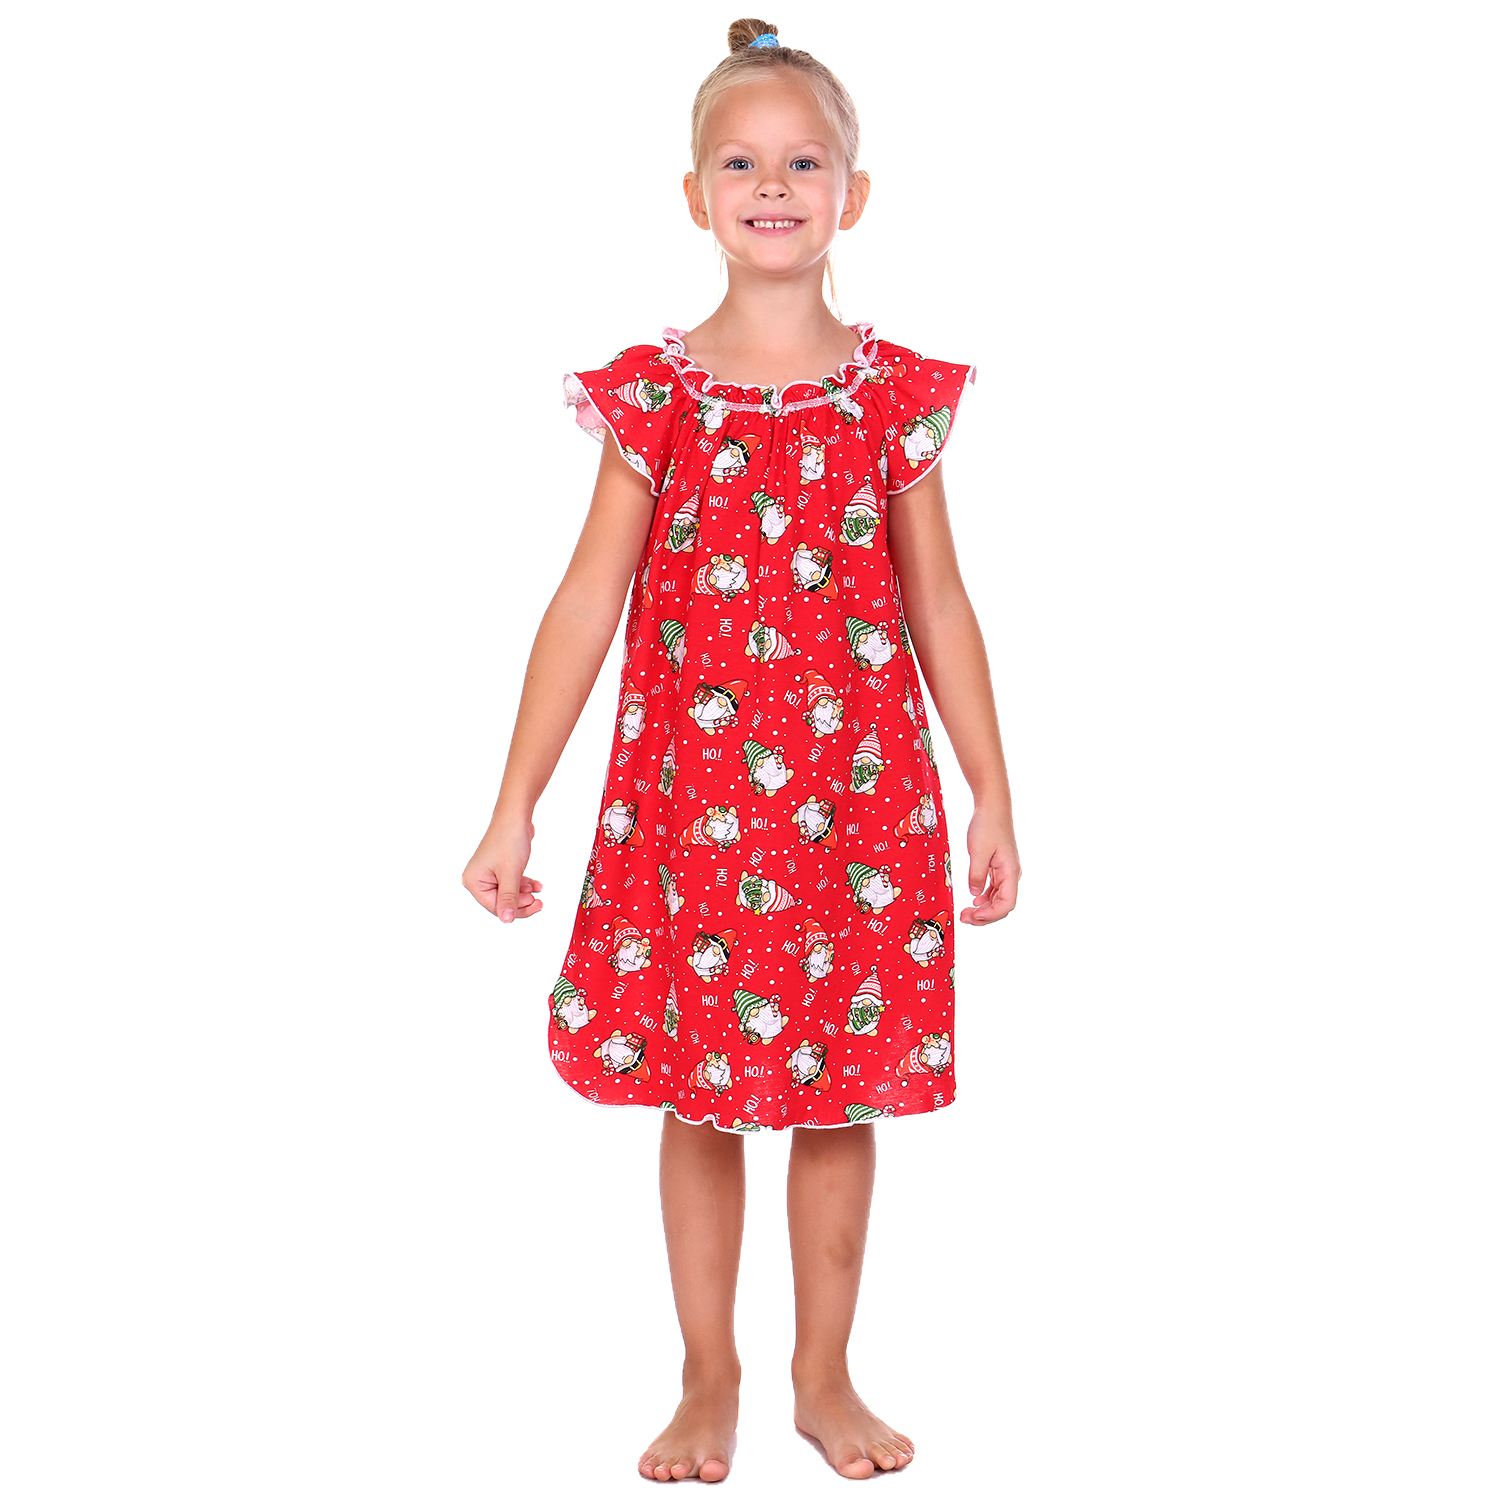 Сорочка ночная Детская Одежда 0003К/красный4 - фото 2